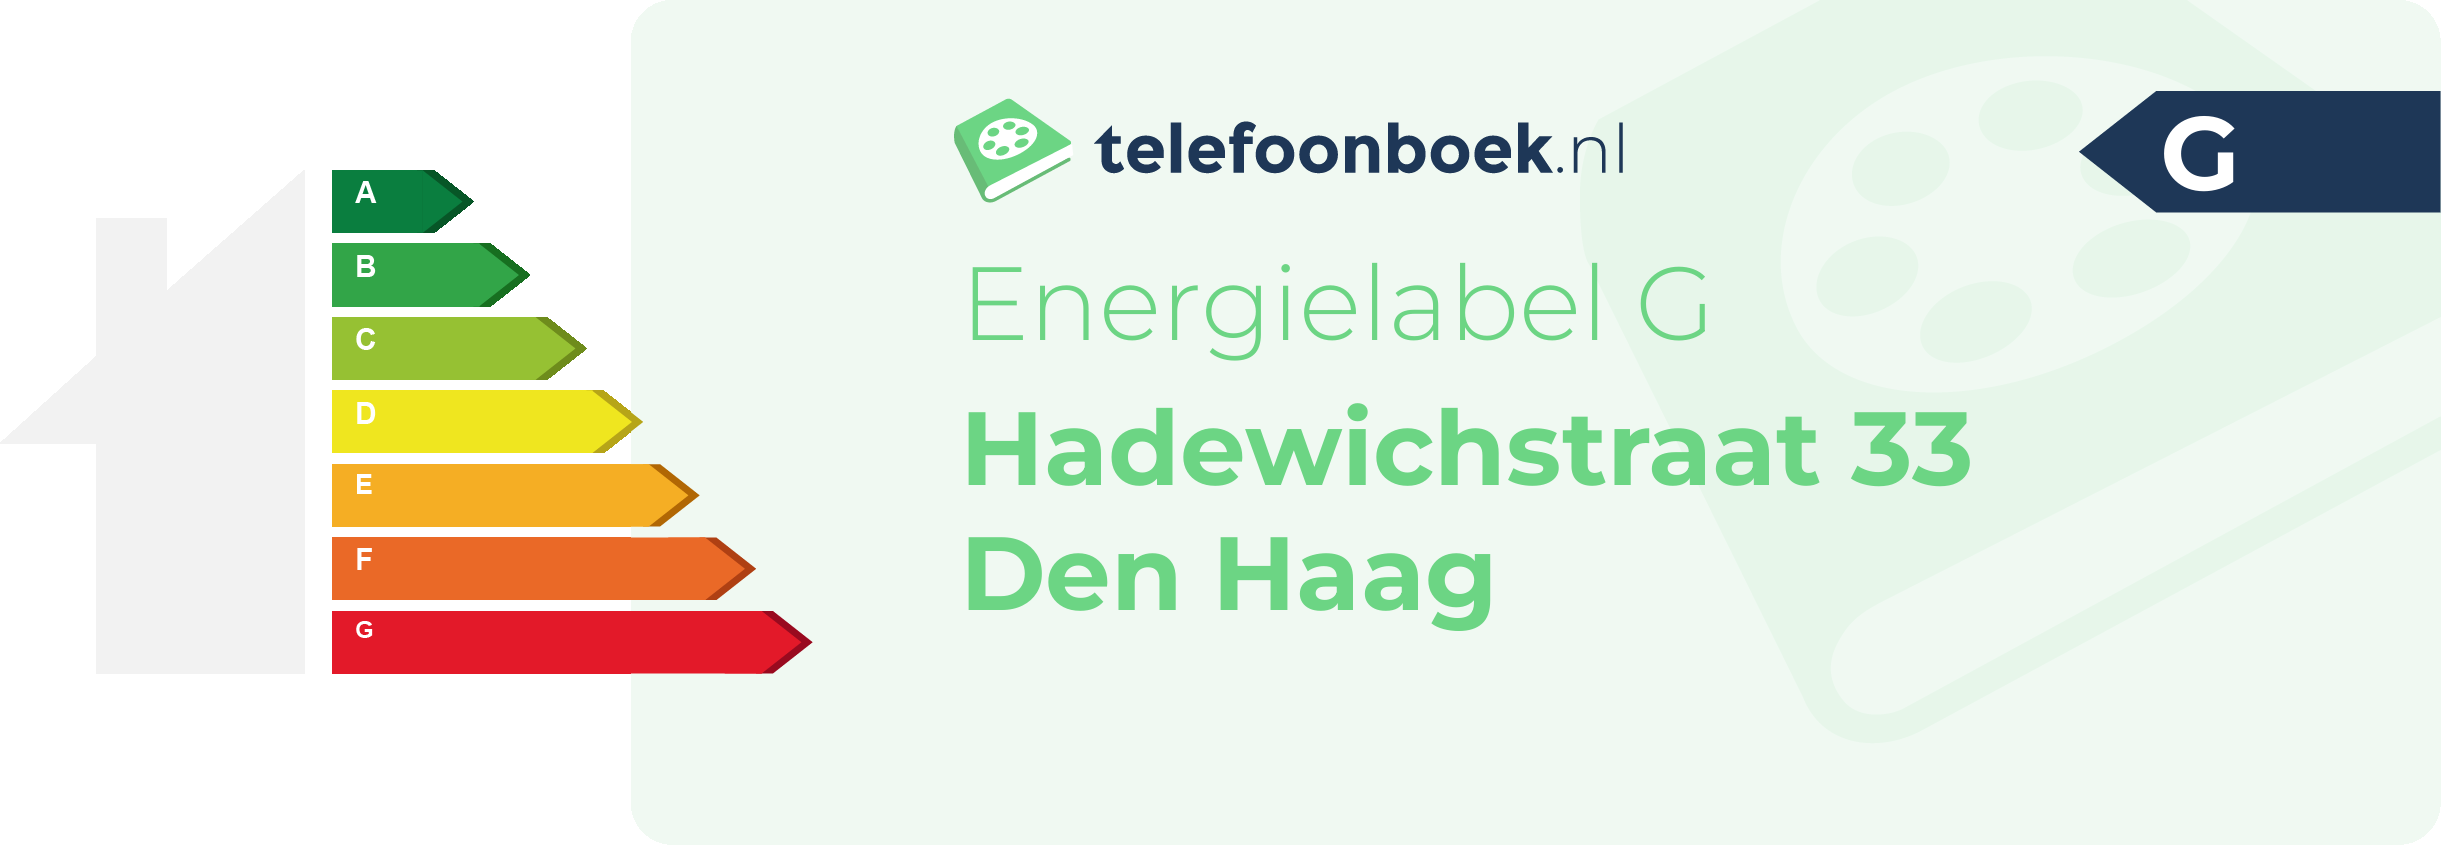 Energielabel Hadewichstraat 33 Den Haag